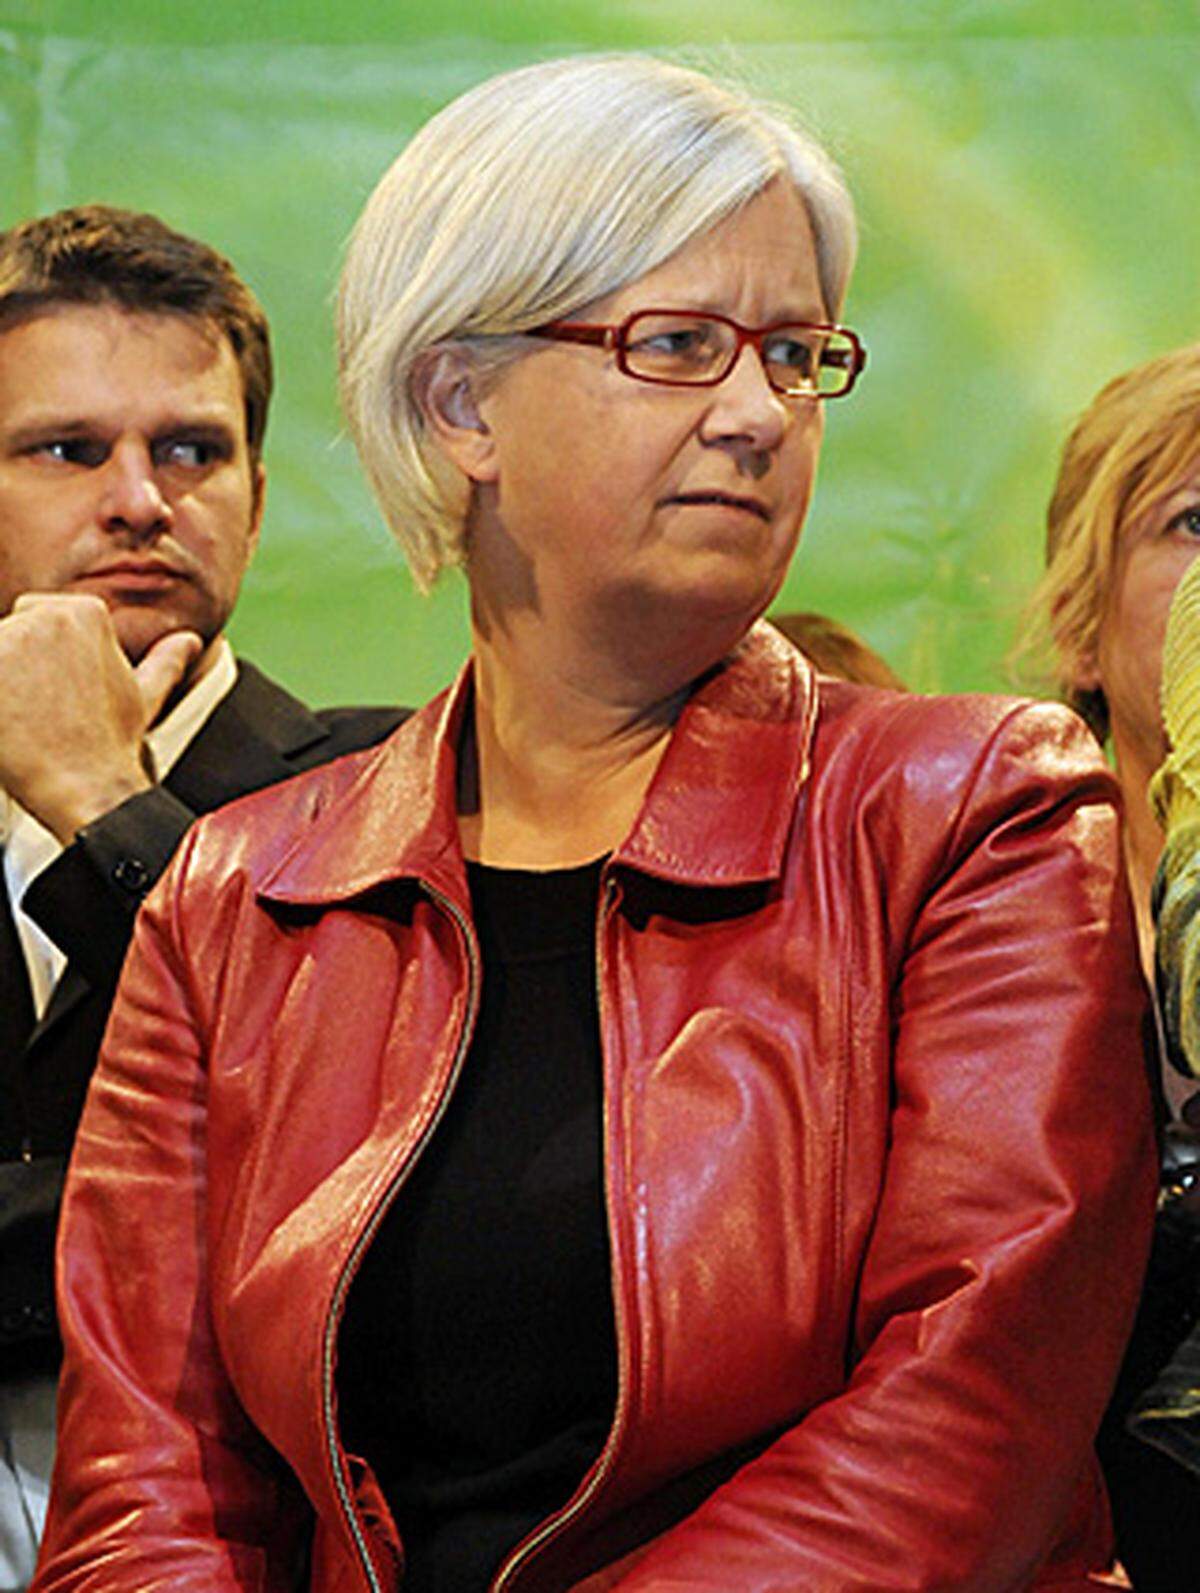 Michaela Sburny, Geschäftsführerin der Grünen, nannte das EU-Wahlergebnis "schmerzlich". Man müsse nun das Ergebnis in aller Ruhe analysieren. Sie schiebt die Schuld nicht auf die Grünen selbst, diese befänden sich gerade "in einem Veränderungsprozess", der den Wählern noch nicht "schlüssig" mitgeteilt werden konnte. Das Positive an dem Ergebnis insgesamt sei jedoch, dass die FPÖ ihr Wahlziel "bei weitem nicht erreicht" habe. Das zeige, das Aufhetzen und Ausgrenzen nicht funktioniere.